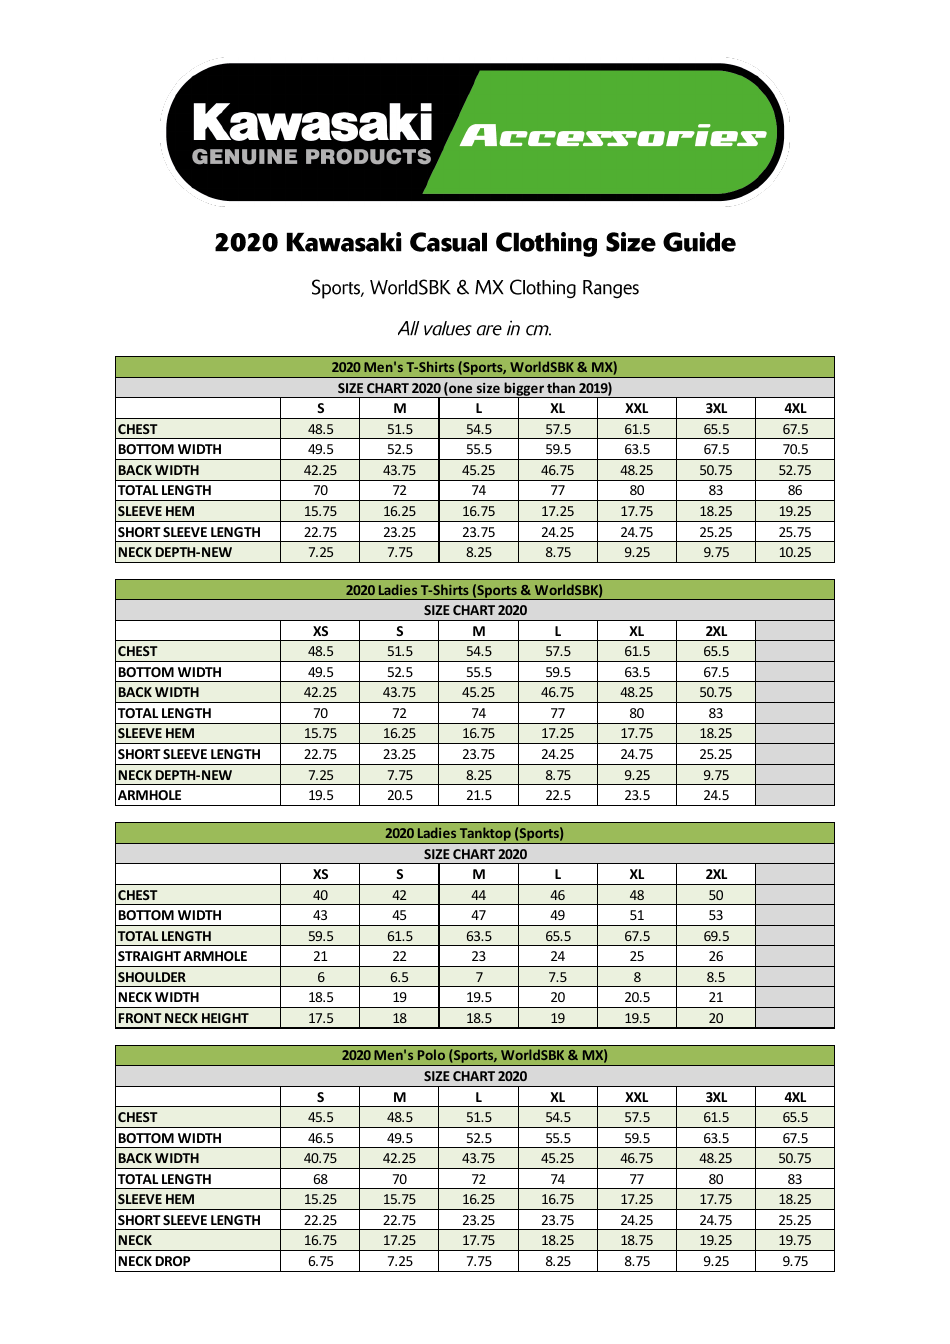 Casual Clothing Size Chart for Kawasaki